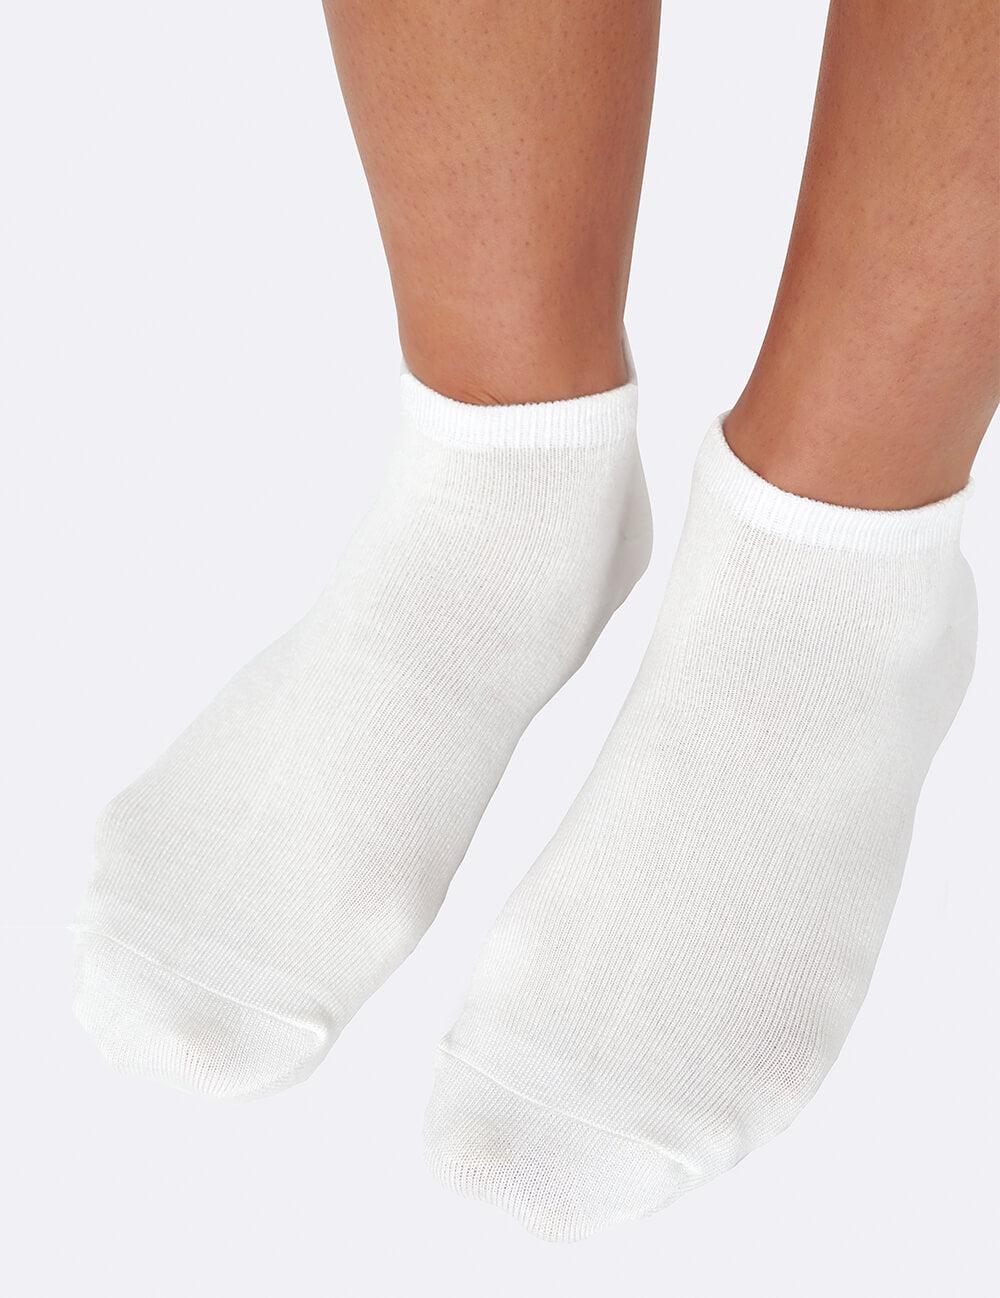 women's low socks